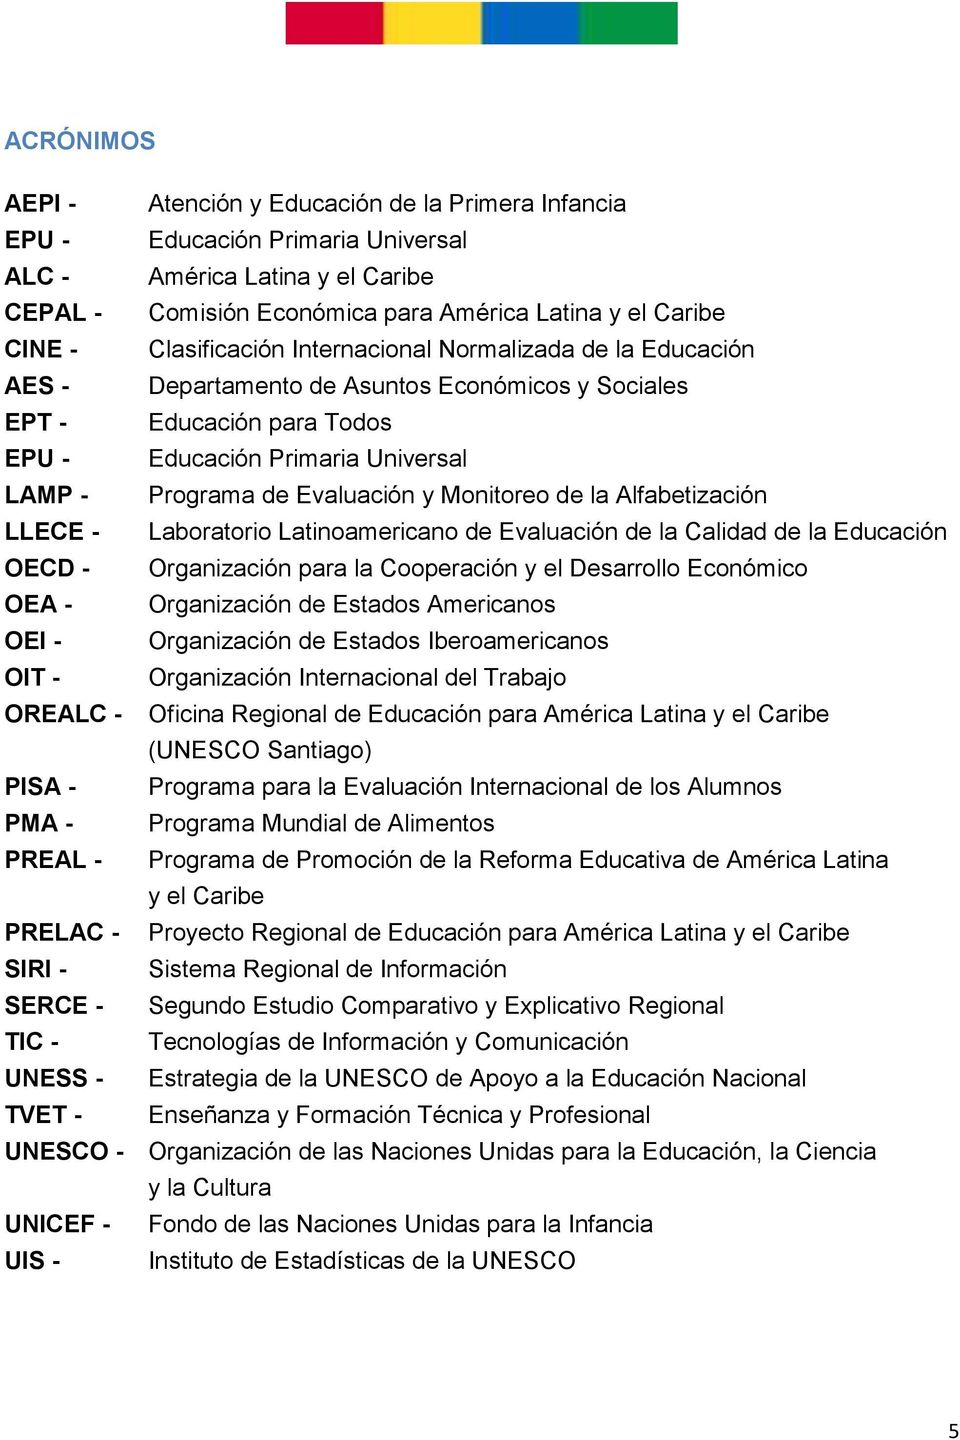 y Monitoreo de la Alfabetización LLECE - Laboratorio Latinoamericano de Evaluación de la Calidad de la Educación OECD - Organización para la Cooperación y el Desarrollo Económico OEA - Organización